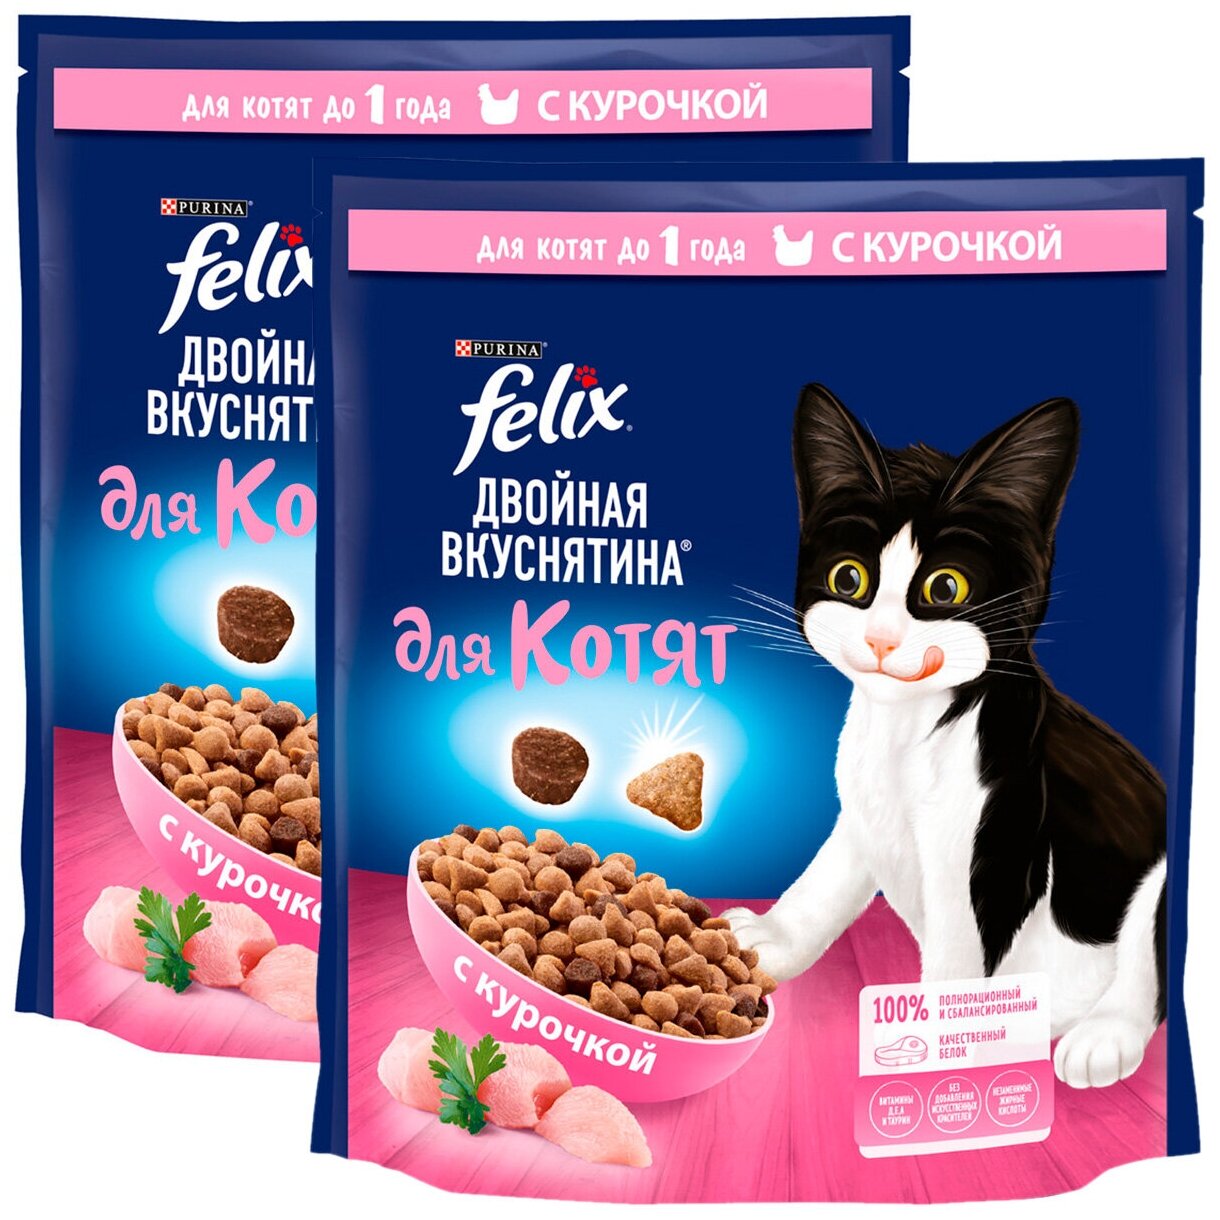 FELIX двойная вкуснятина для котят с курочкой (0,6 + 0,6 кг)